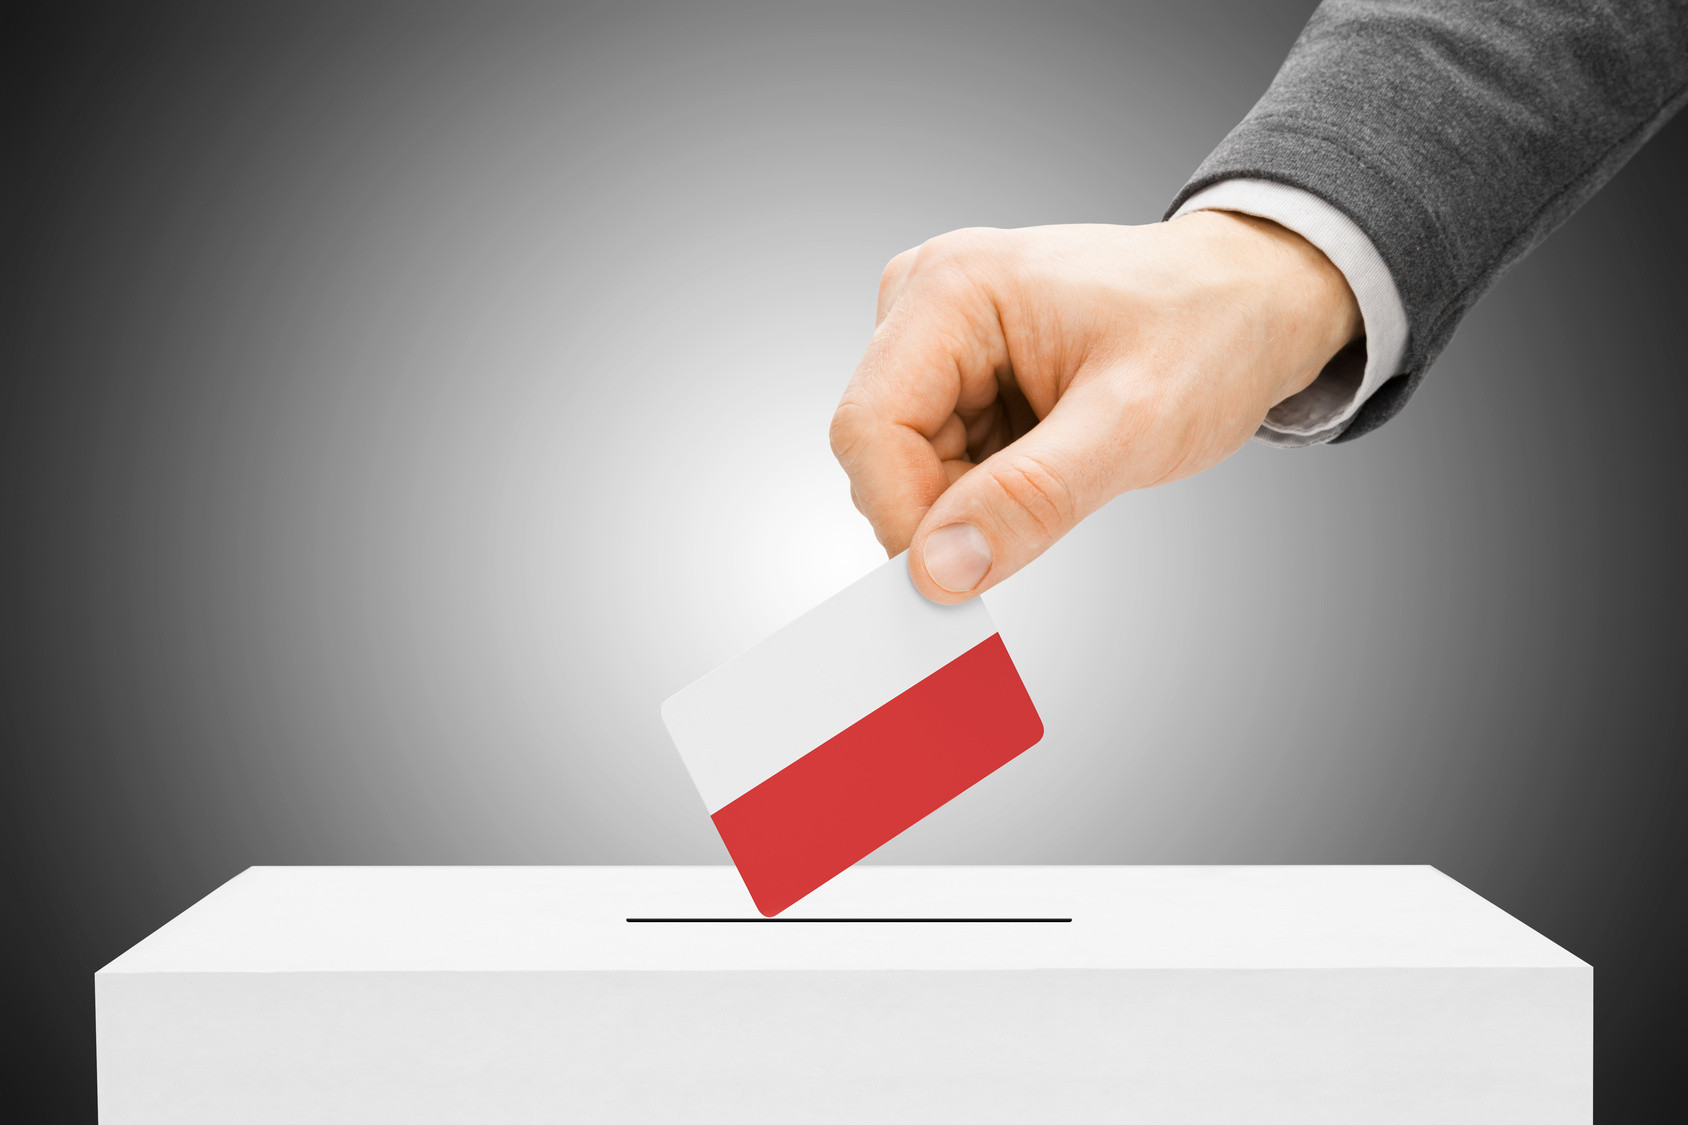 Za wyniesie karty wyborczej lub referendalnej poza lokal wyborczy grozi odpowiedzialność karna. Karta do głosowania jest ważna tylko wtedy, jeśli posiada pieczęć obwodowej komisji wyborczej.